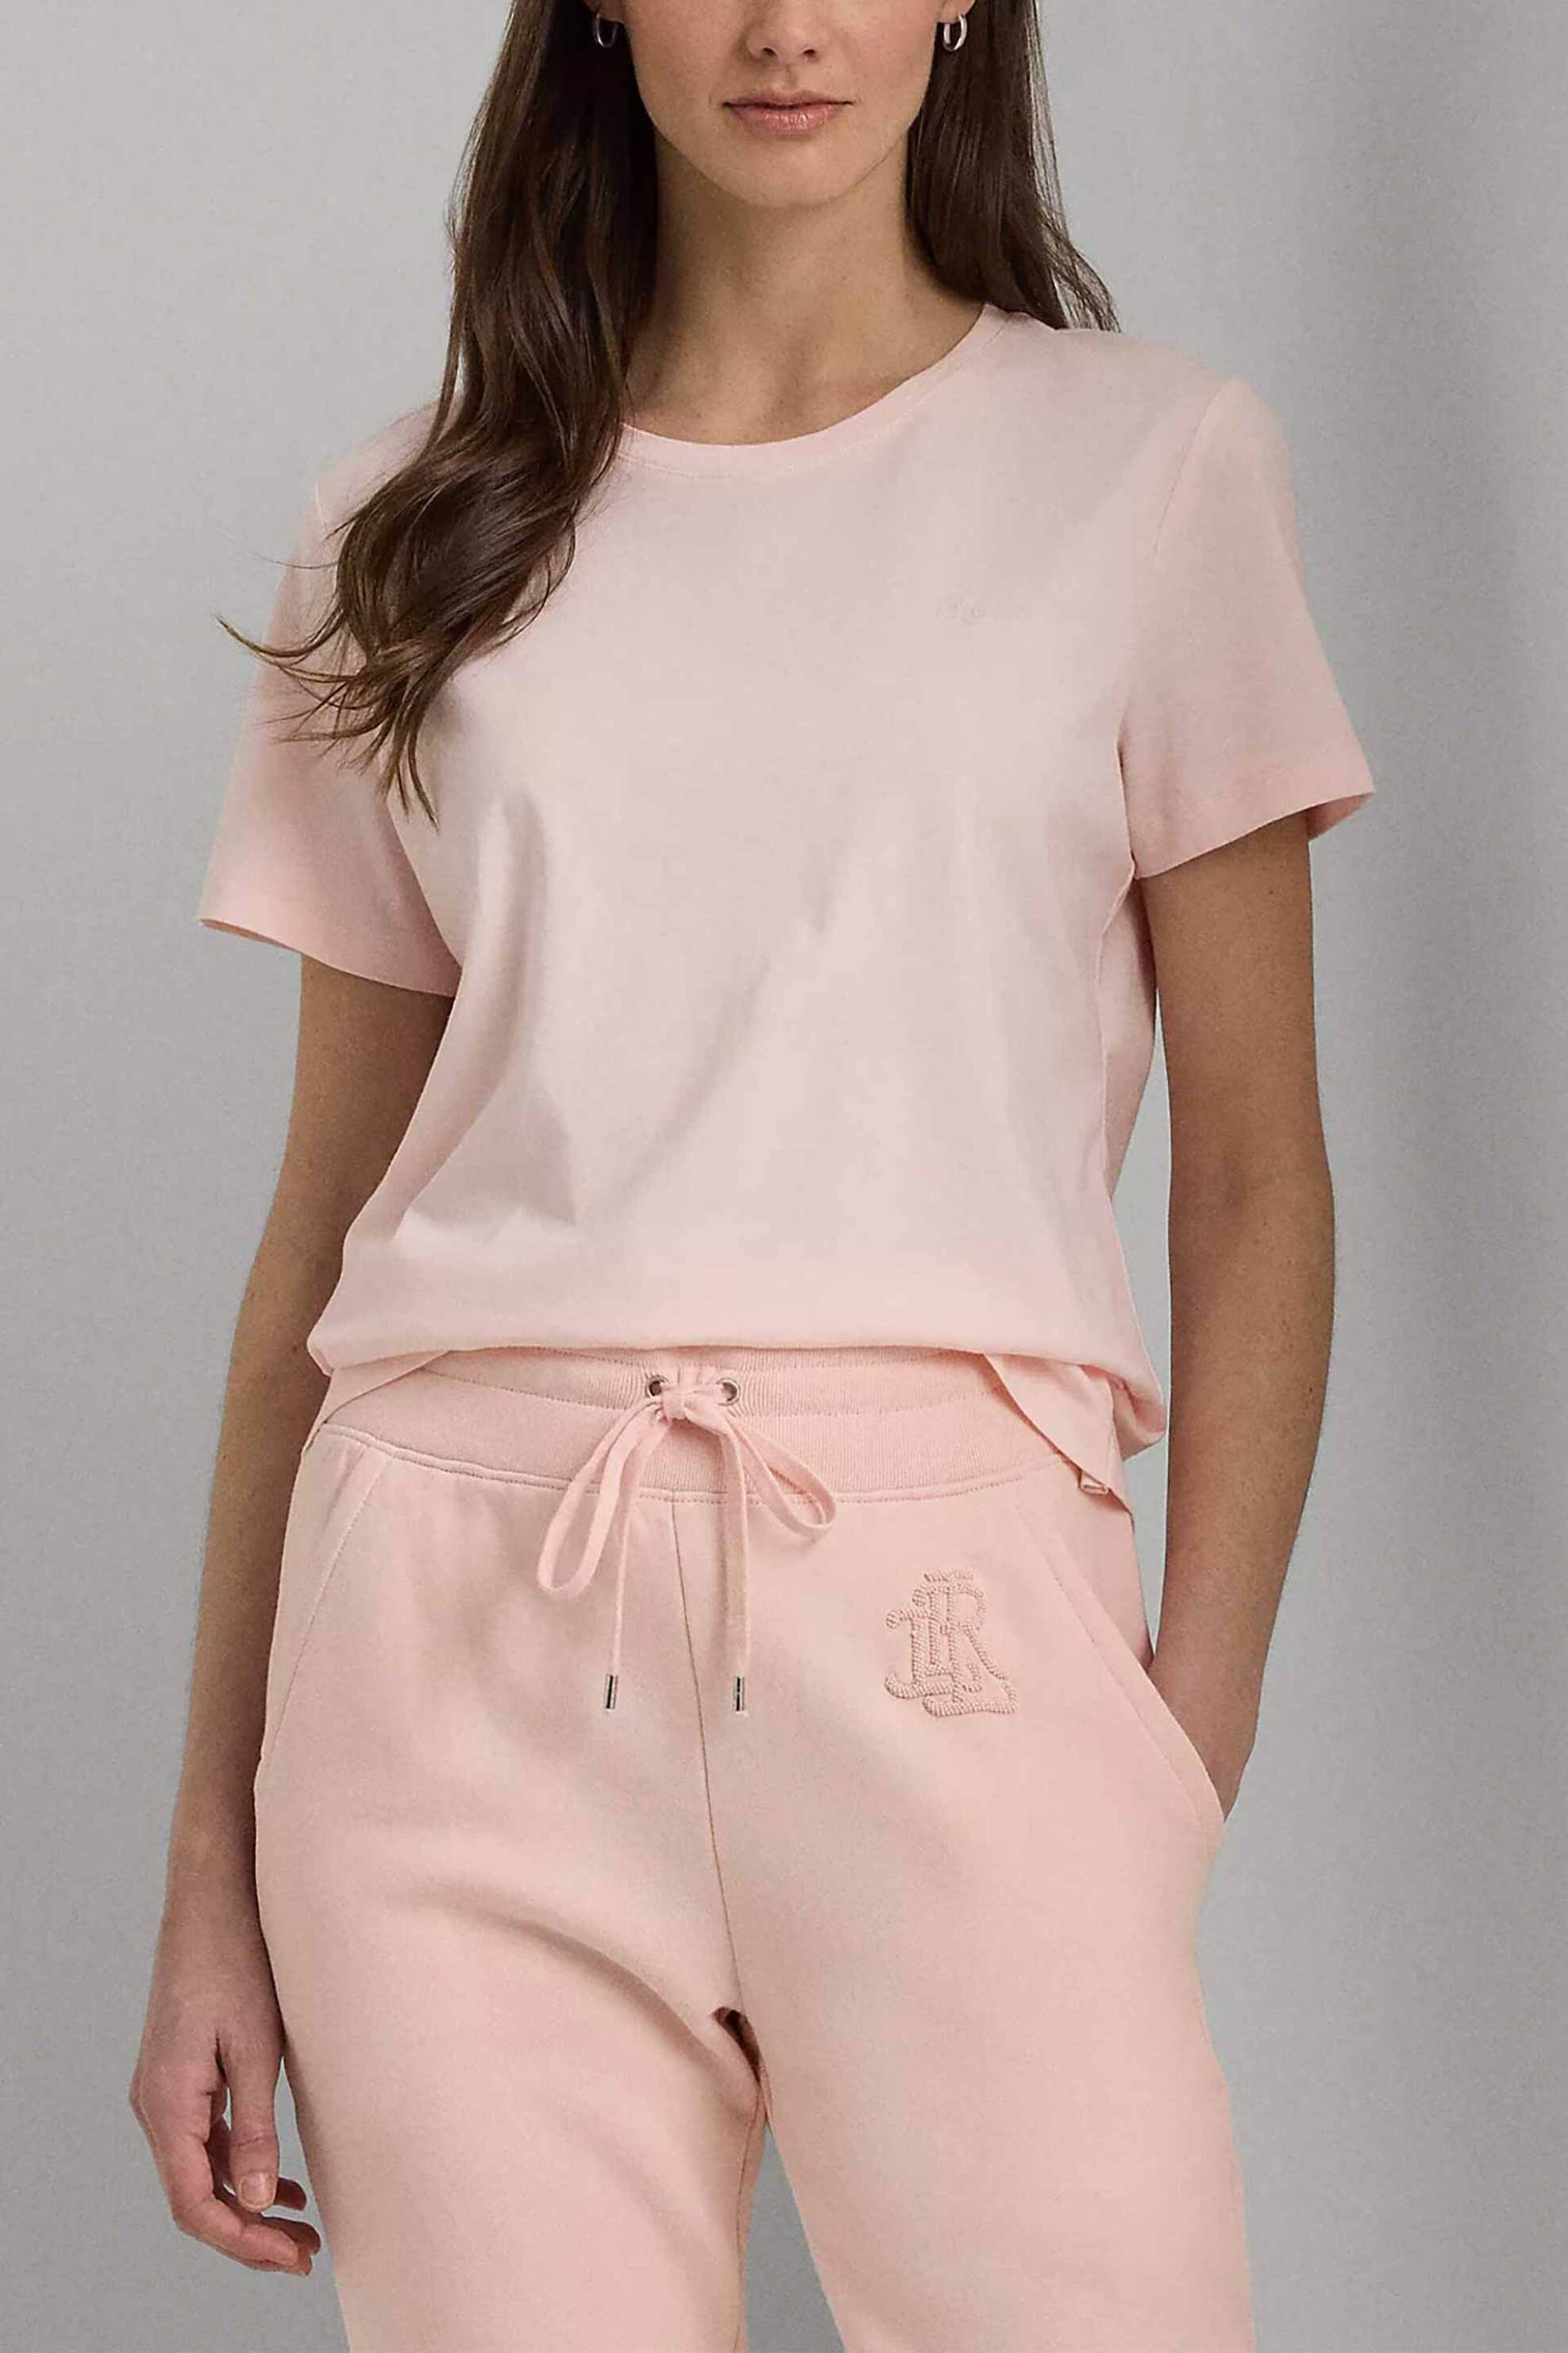 Γυναικεία Ρούχα & Αξεσουάρ > Γυναικεία Ρούχα > Γυναικεία Τοπ > Γυναικεία T-Shirts Lauren Ralph Lauren γυναικείο T-shirt μονόχρωμο με κεντημένο μονόγραμμα - 200931911005 Ροζ Ανοιχτό